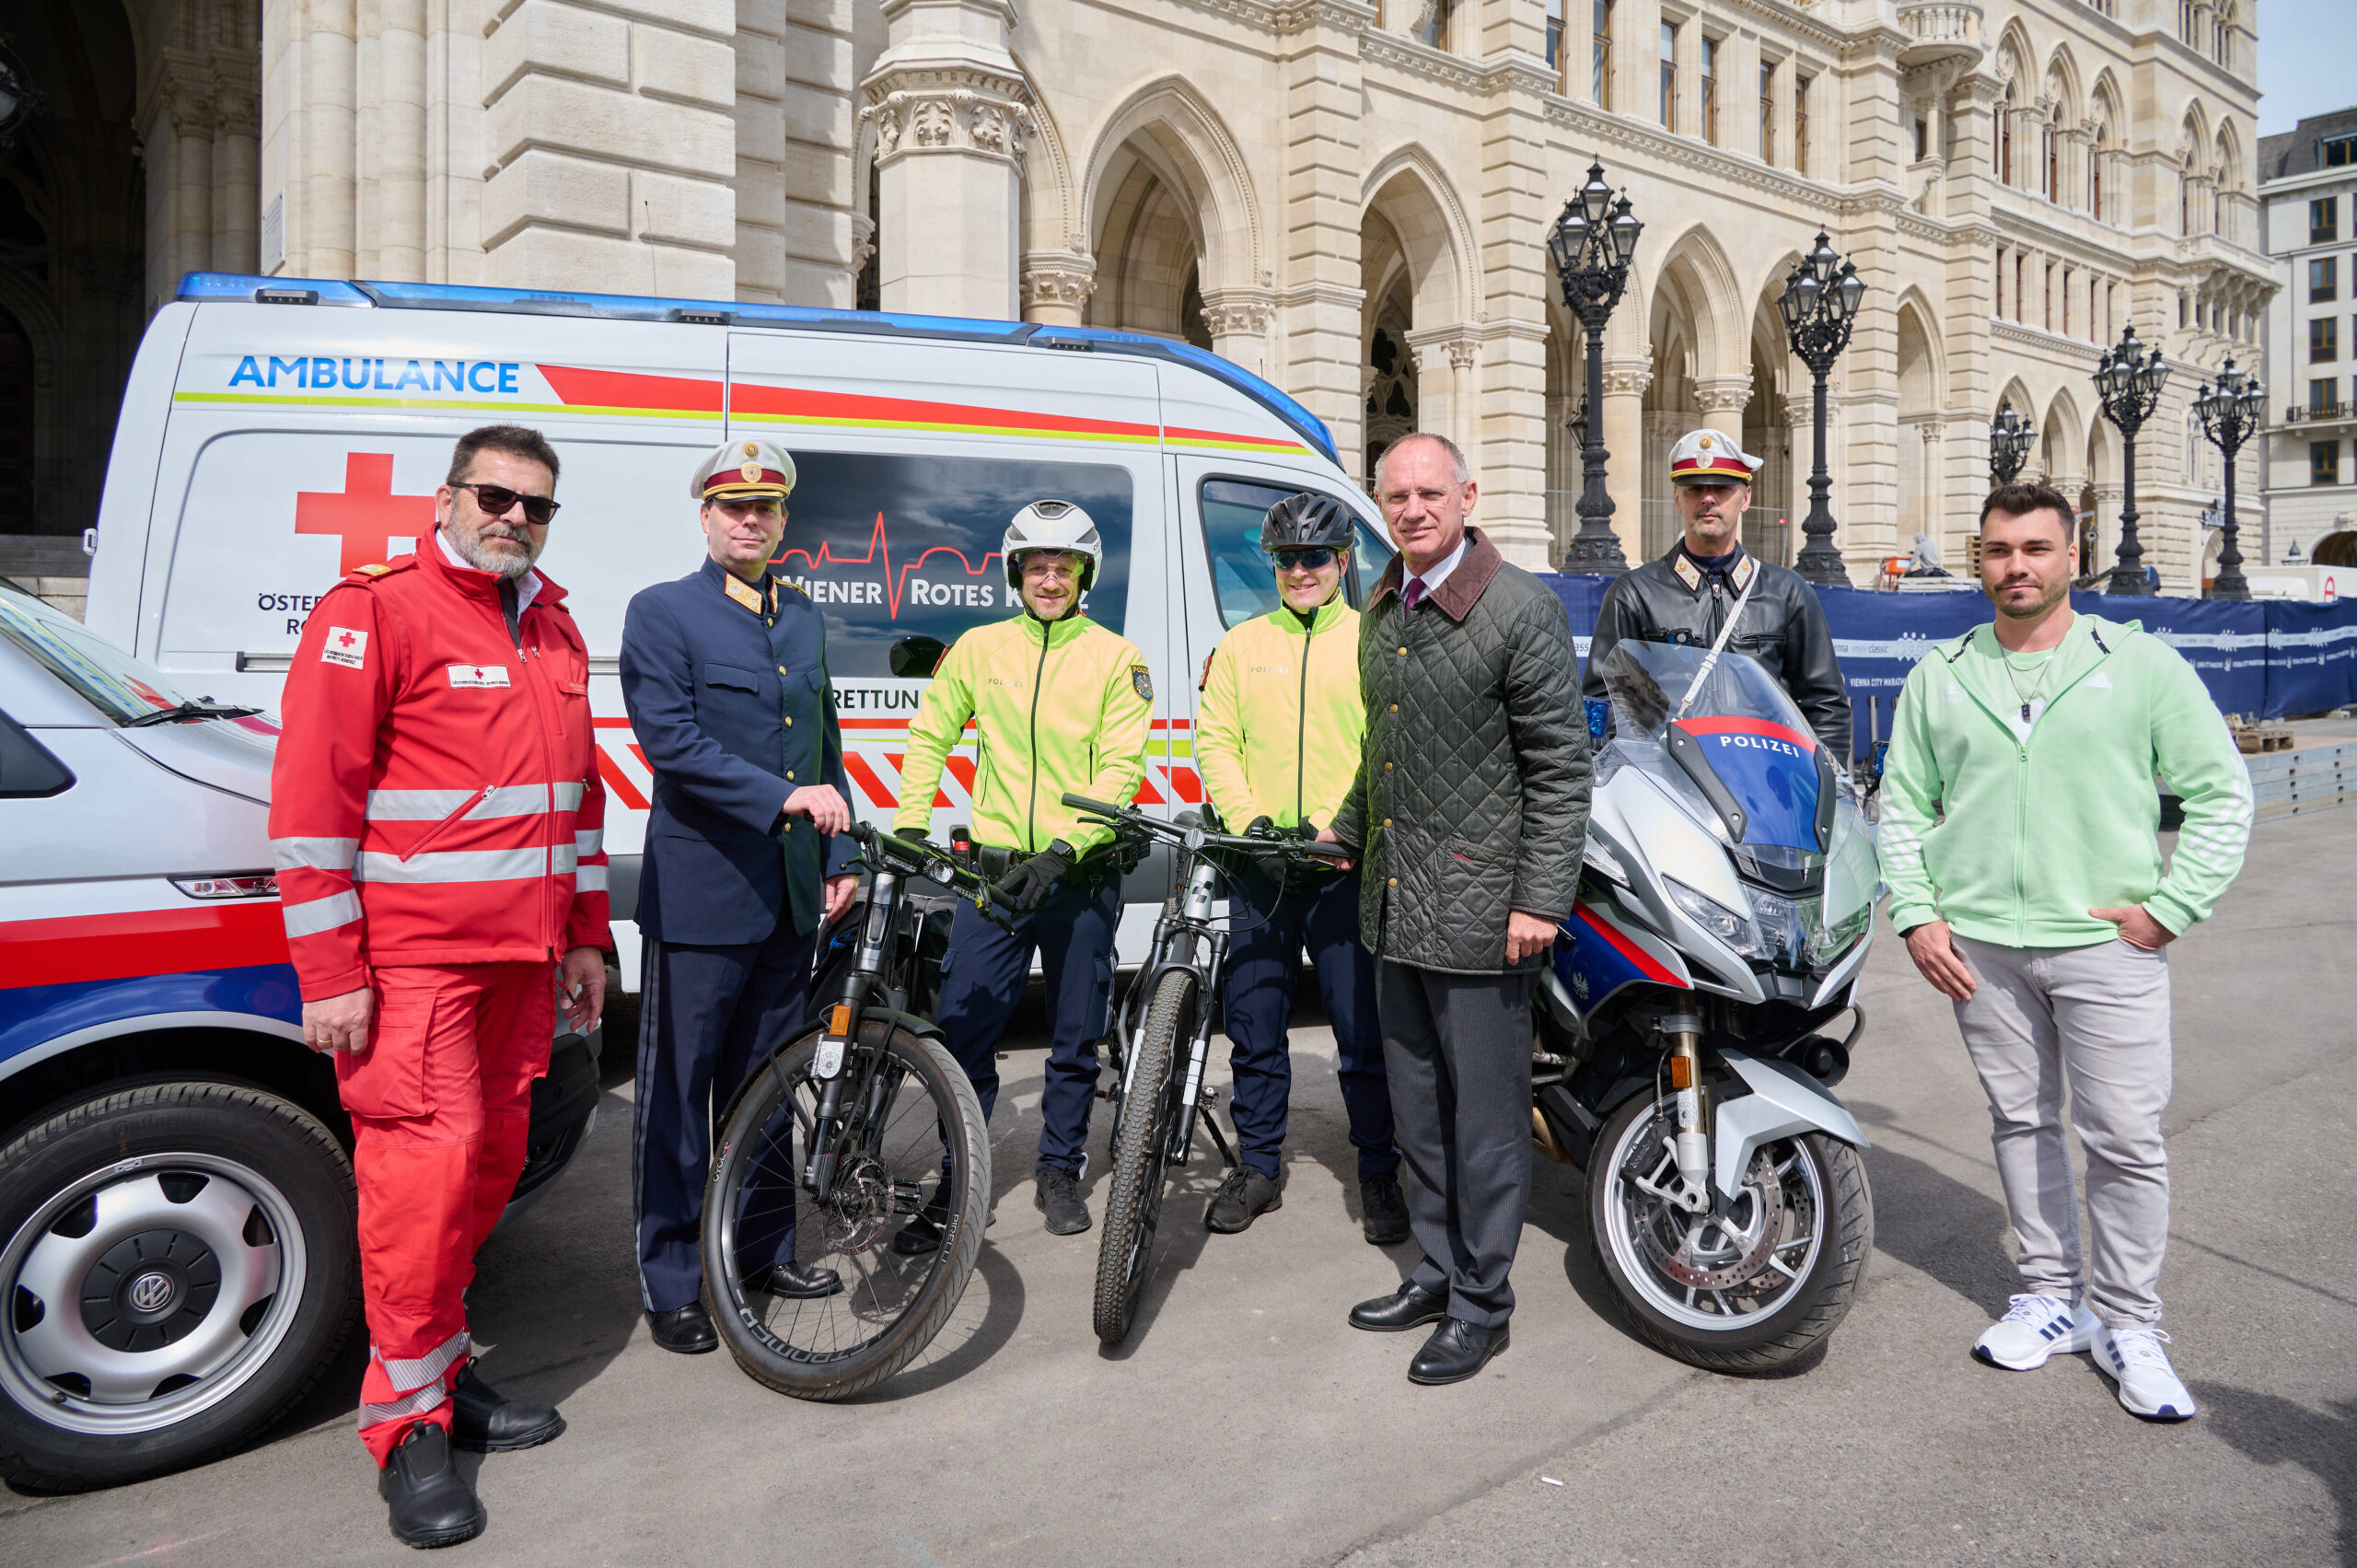 Karner bei Lokalaugenschein zu Sicherheitsvorbereitungen für Vienna City Marathon